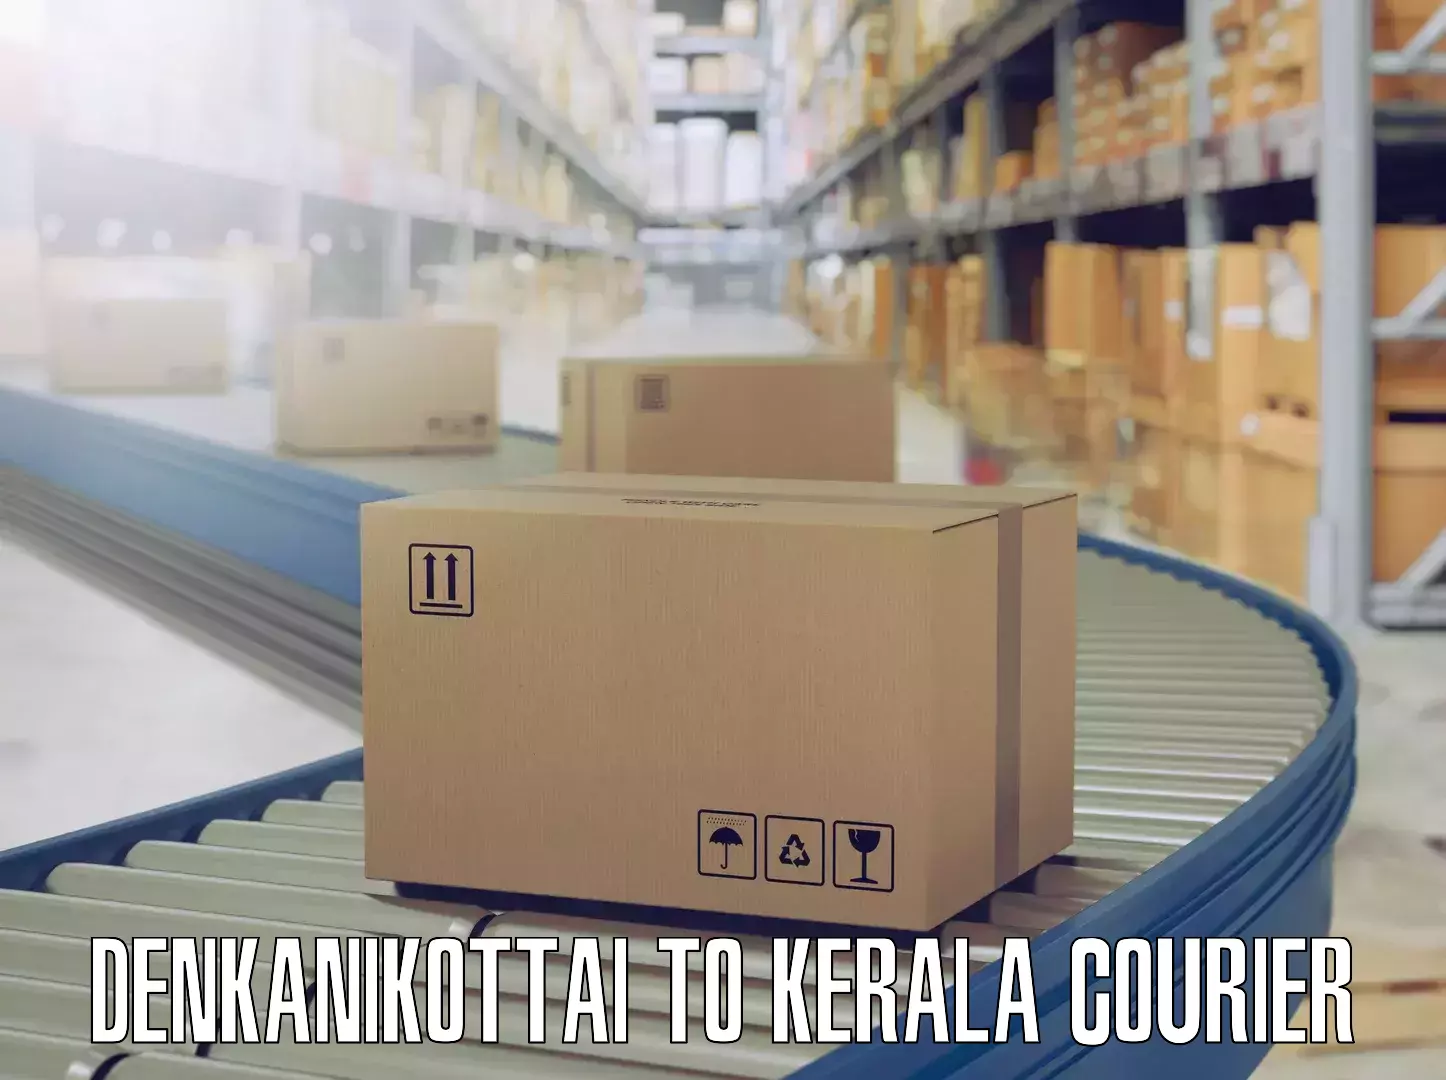 Furniture moving specialists Denkanikottai to Kerala